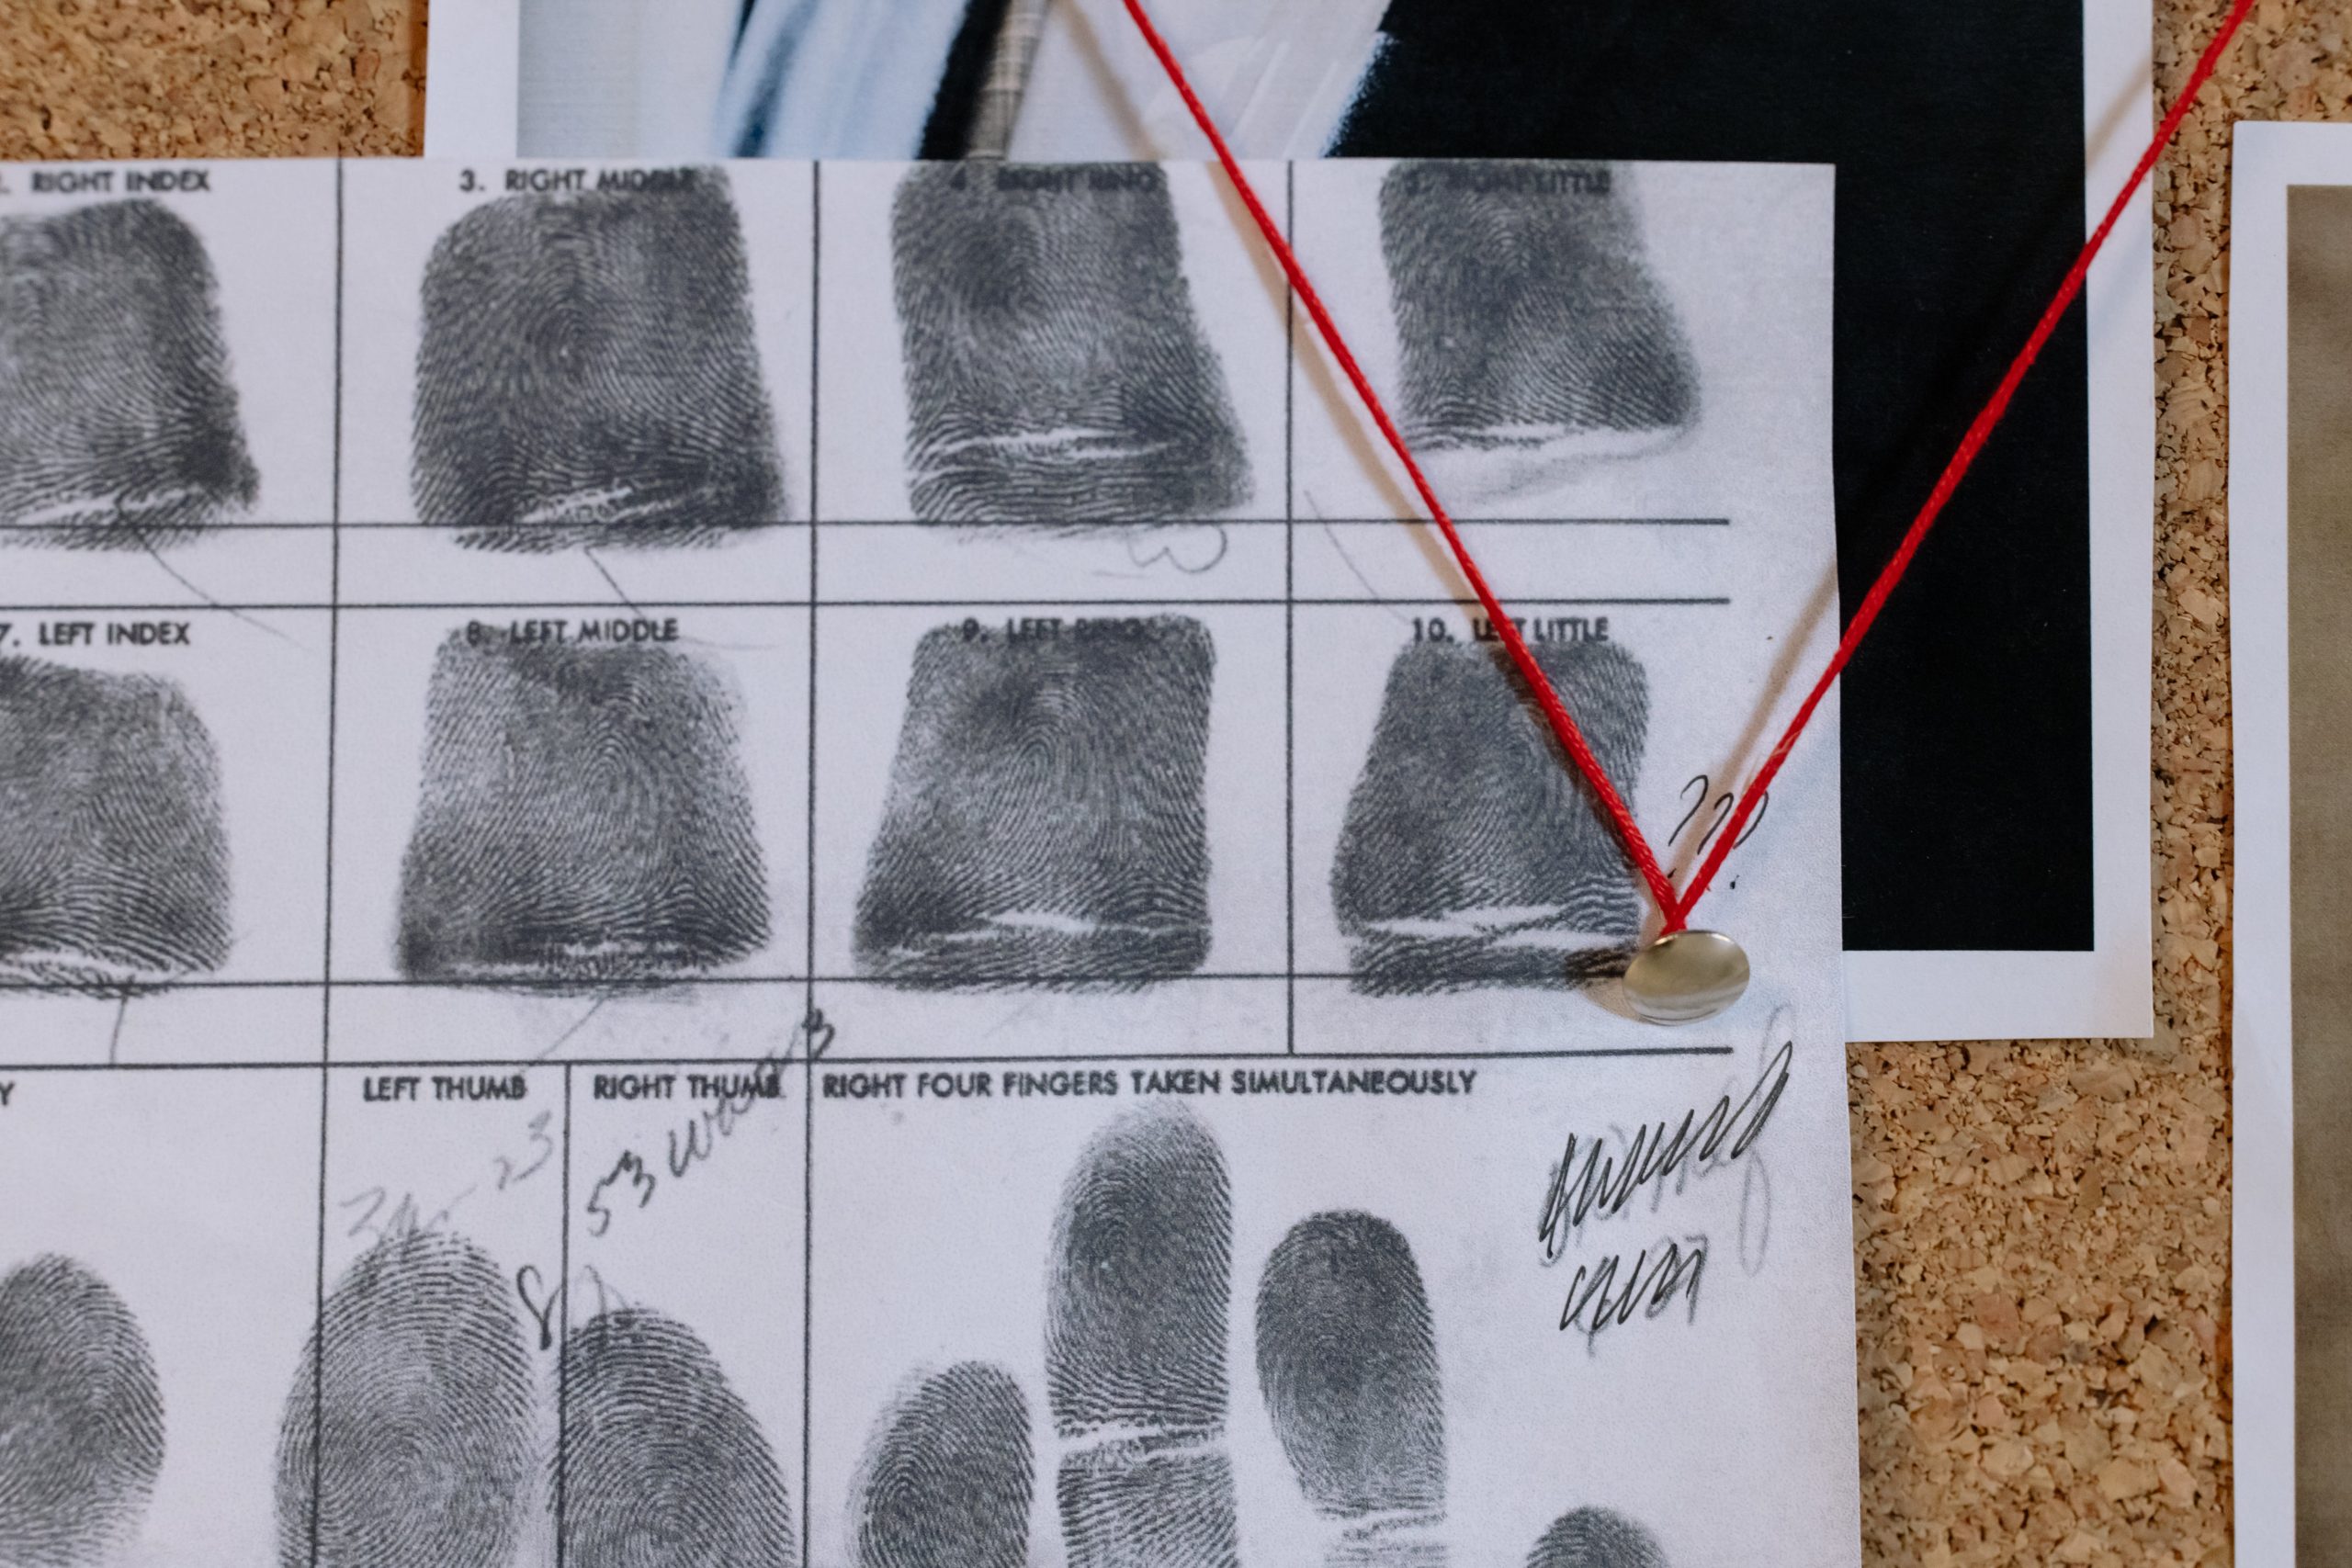 AI researchers find our fingerprints may not be unique